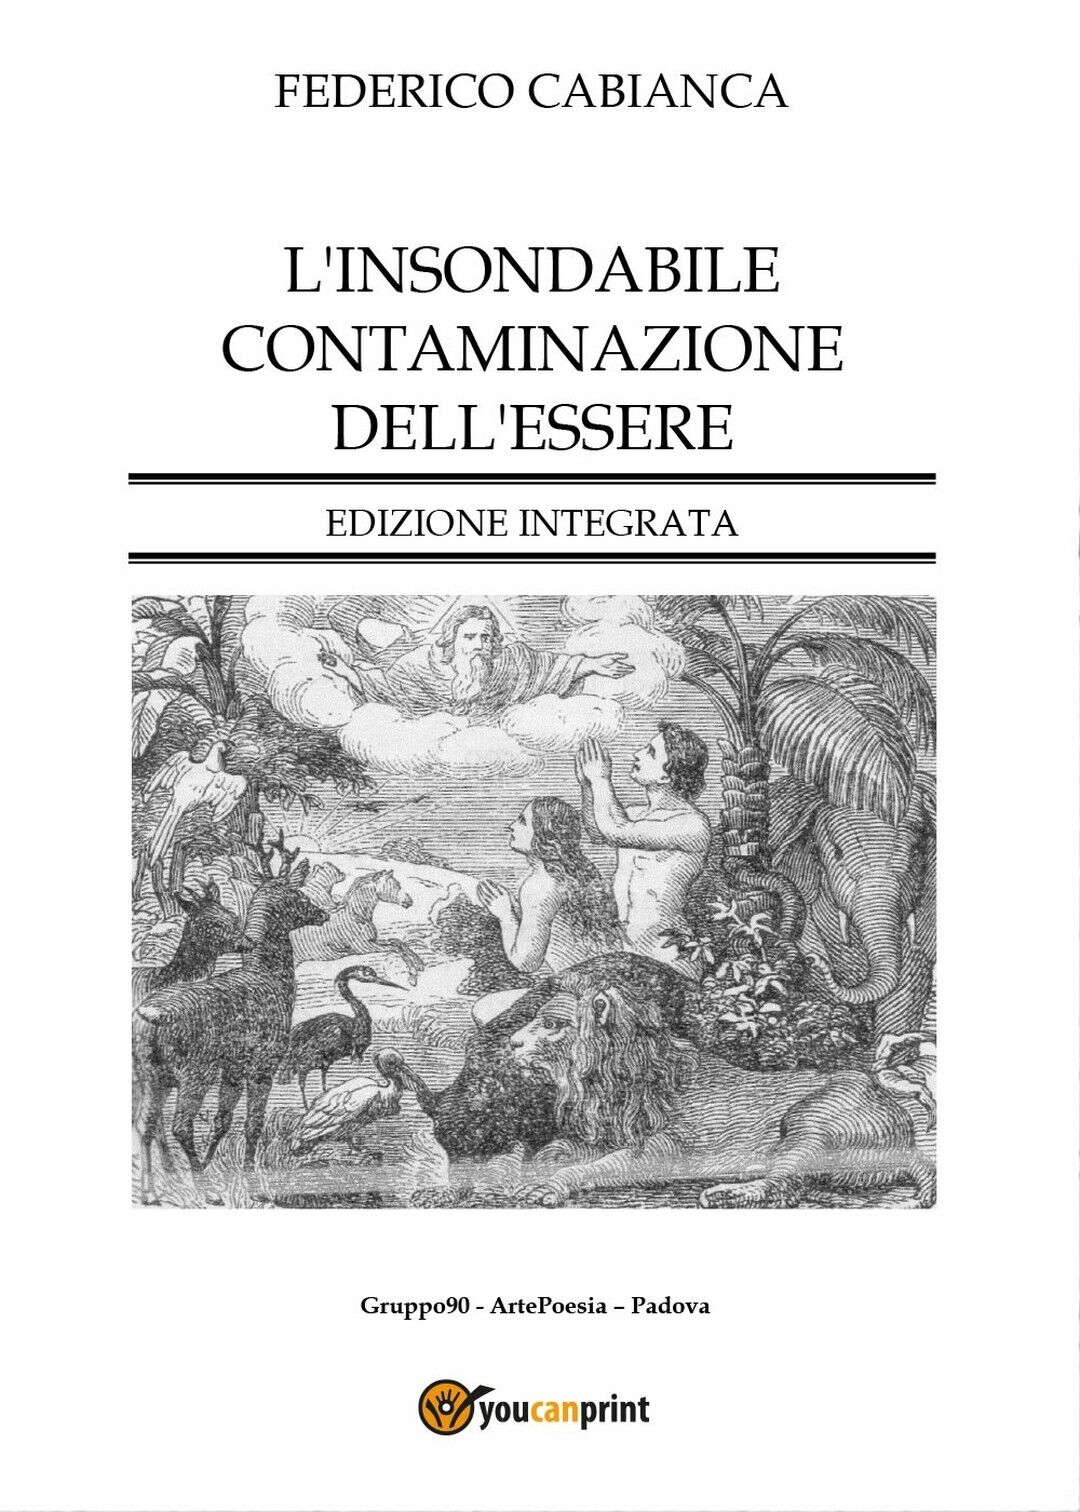 L'insondabile contaminazione delL'essere - Edizione integrata, Federico Cabianca libro usato